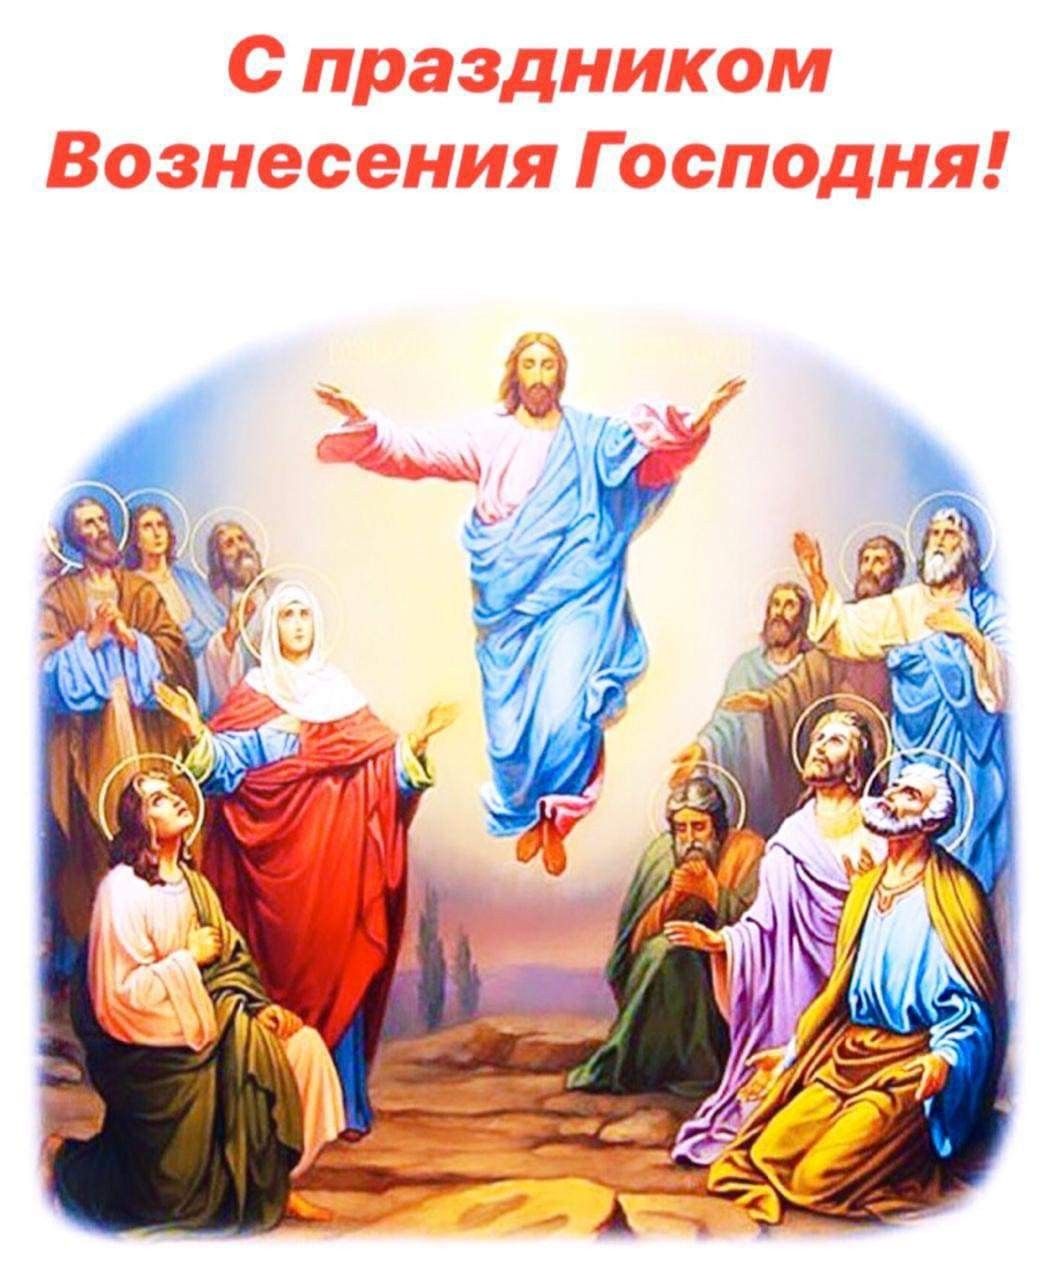 Открытки на праздник 25 мая Вознесение Господне (17)